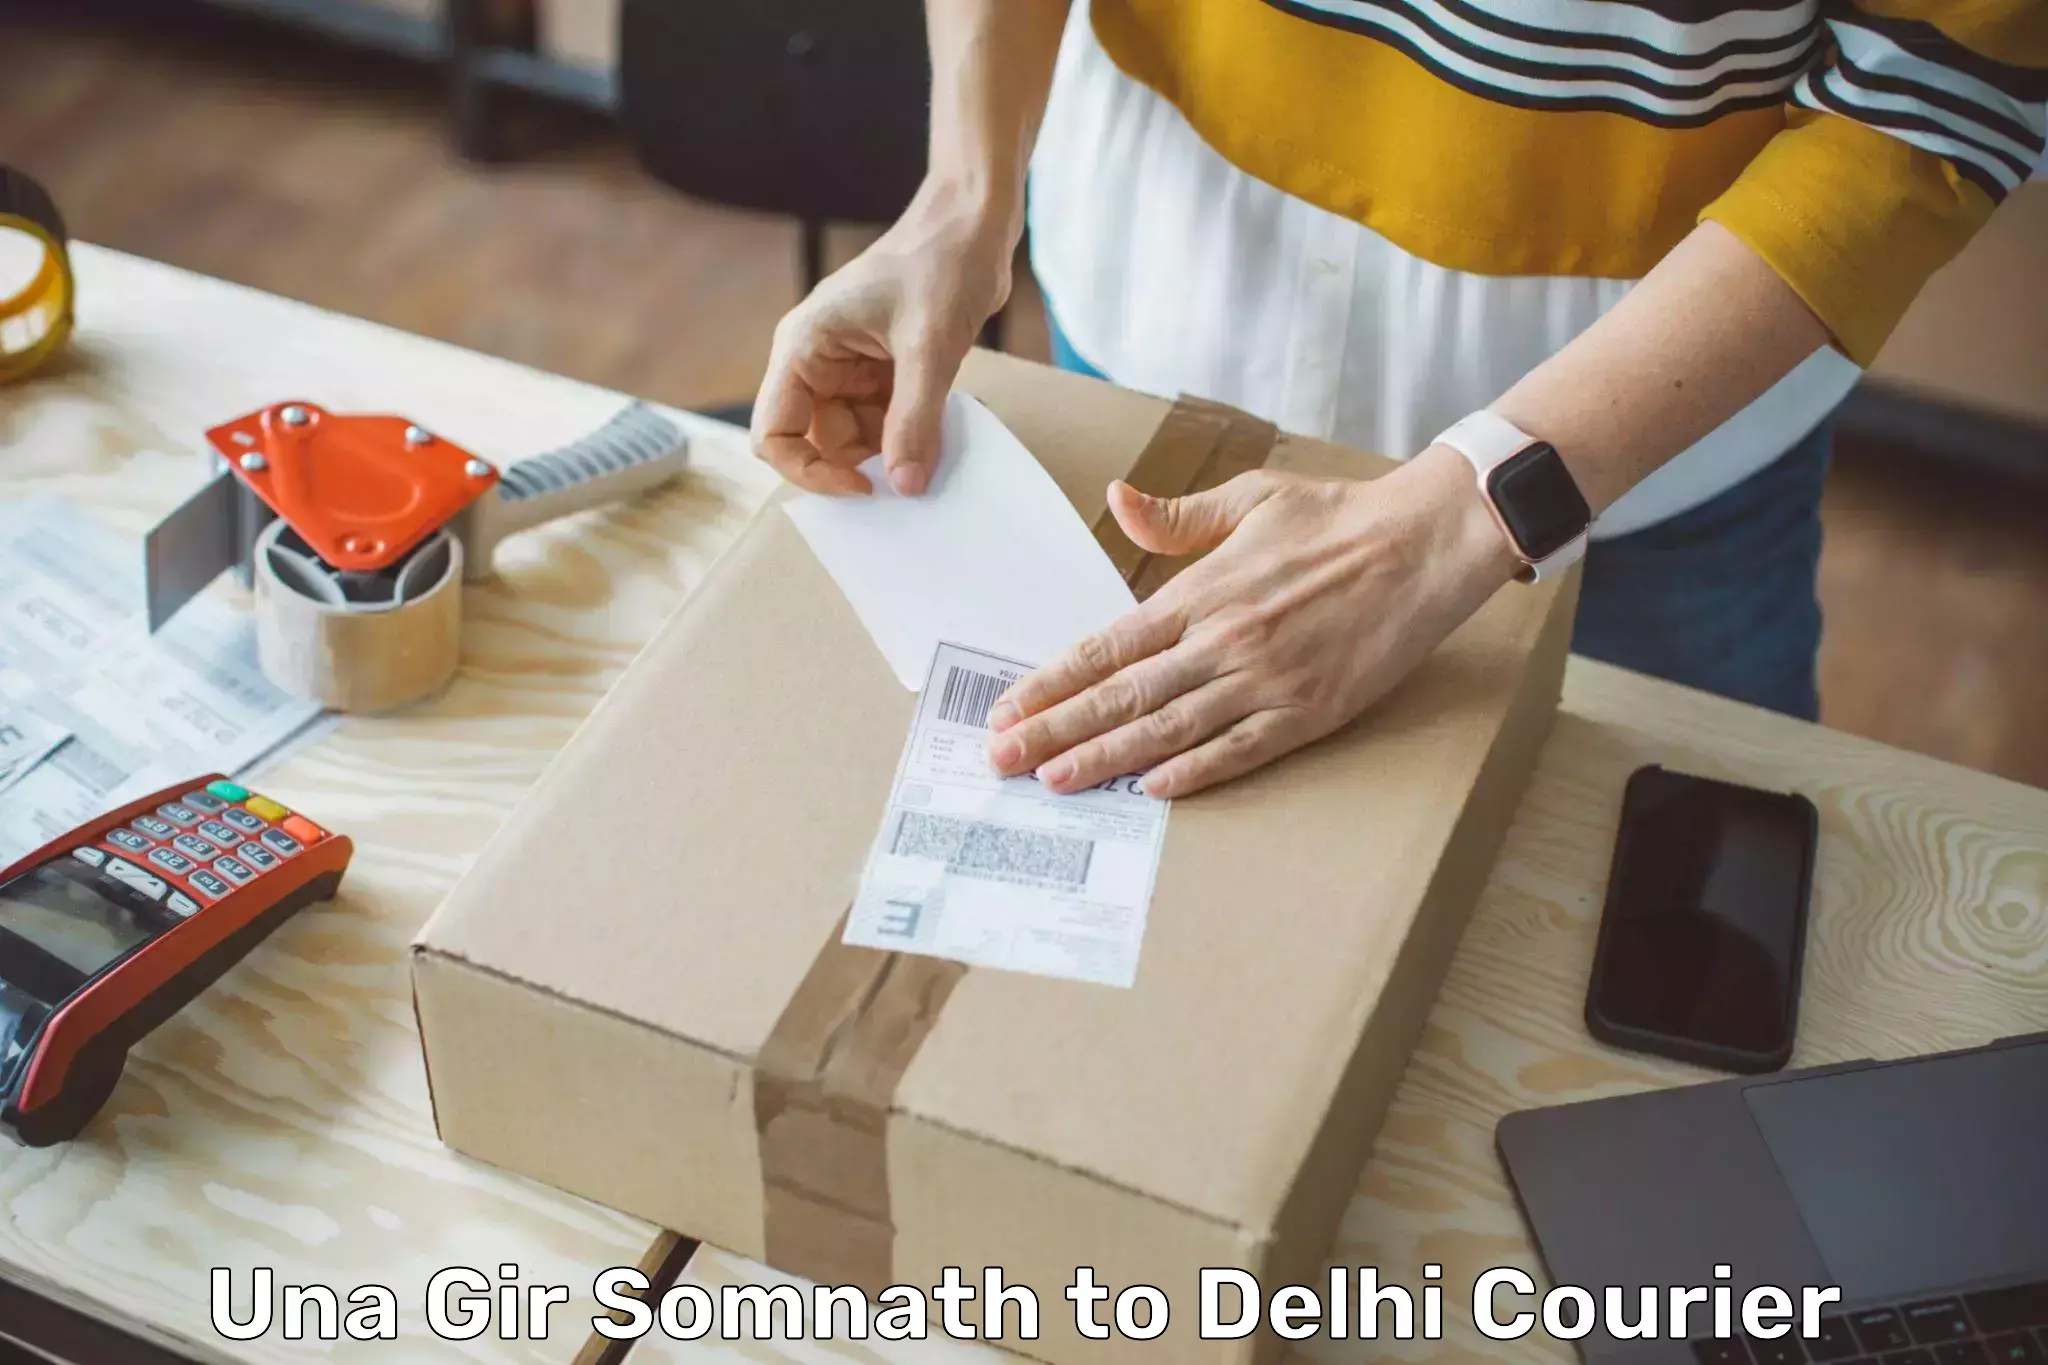 Speedy delivery service Una Gir Somnath to NIT Delhi